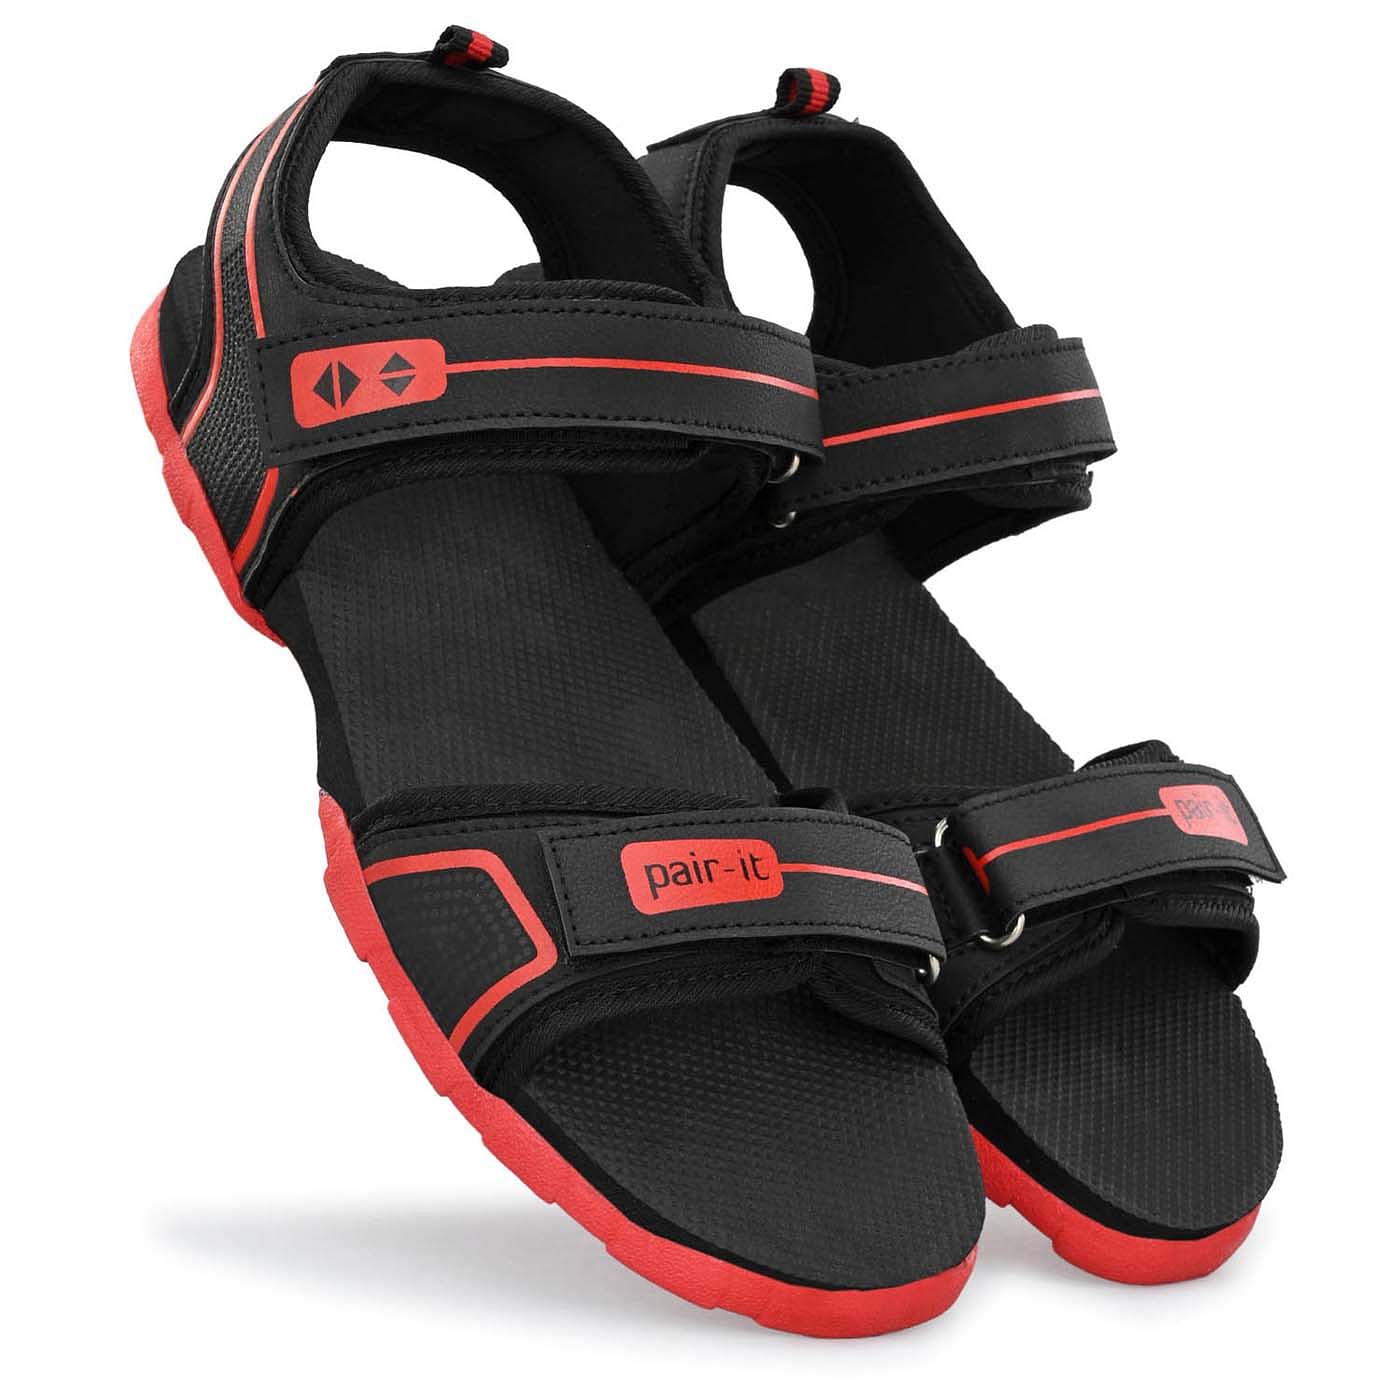 Pair-it Mn Sandals - Black/Red-UN-Mn-Sp-Sandal002